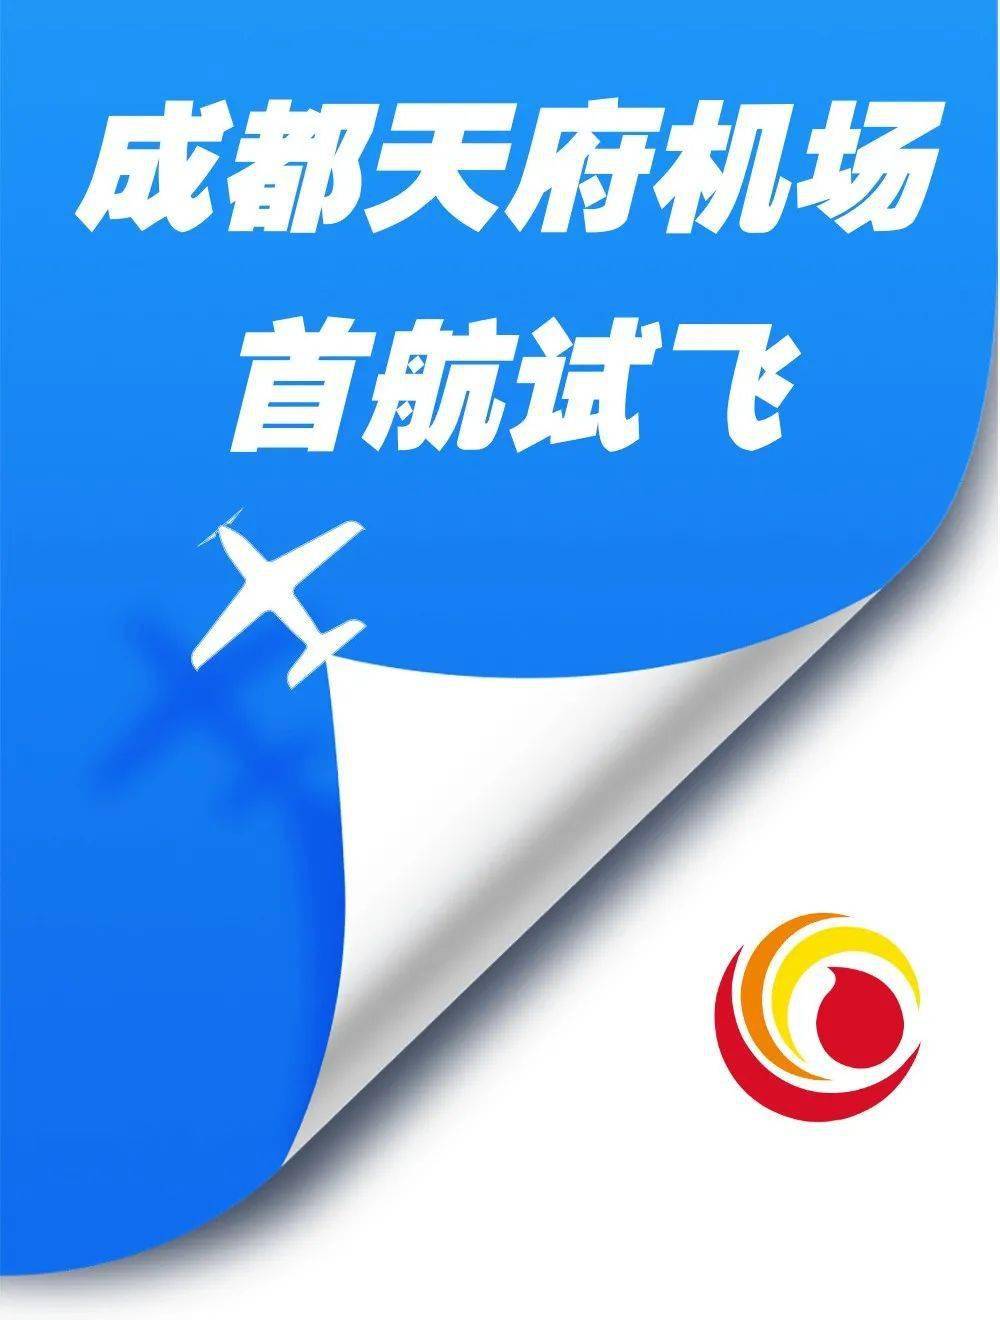 天府国际机场logo图片